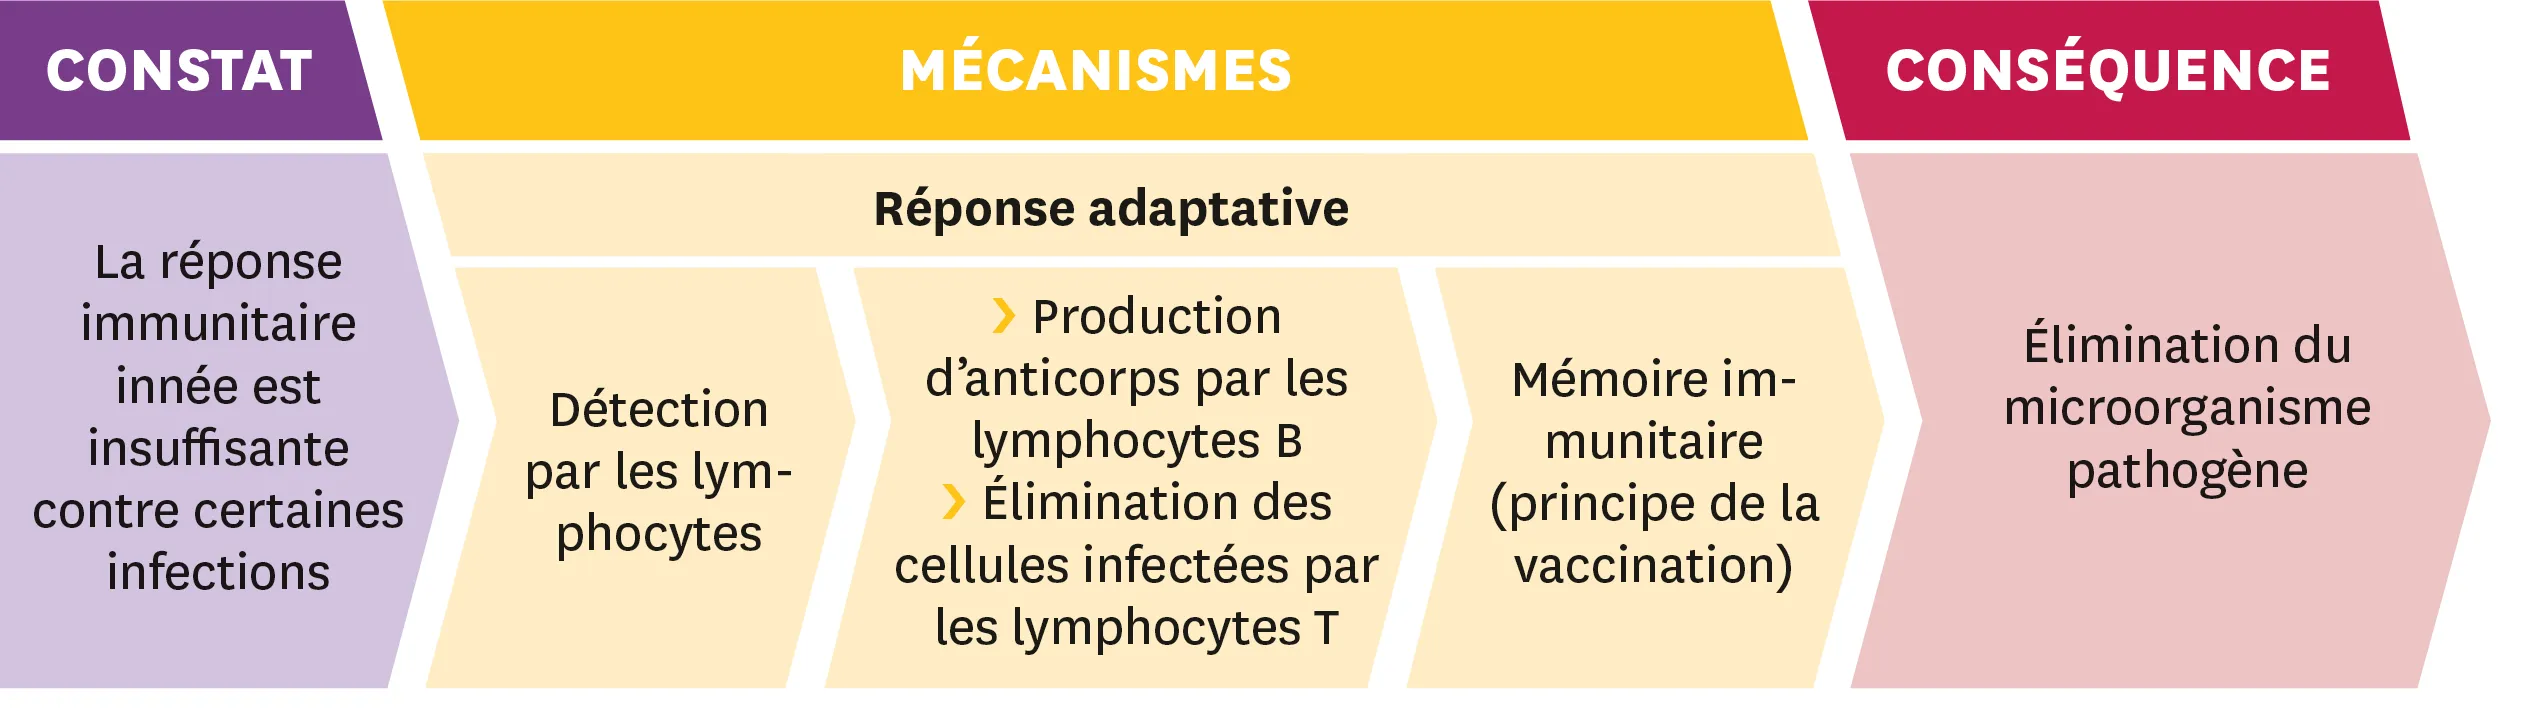 Schéma représentant trois étapes : 1- le constat = La réponse immunitaire innée est insuffisante contre certaines infections ; 2 - la réponse adaptative = Détection par les lymphocytes, Production d'anticprps par les lymphocytes B, Élimination des cellules infectées par les lymphocytes T, Mémoire immunitaire (principe de la vaccination) ; et 3 - les conséquences : Élimination du microorganisme pathogène